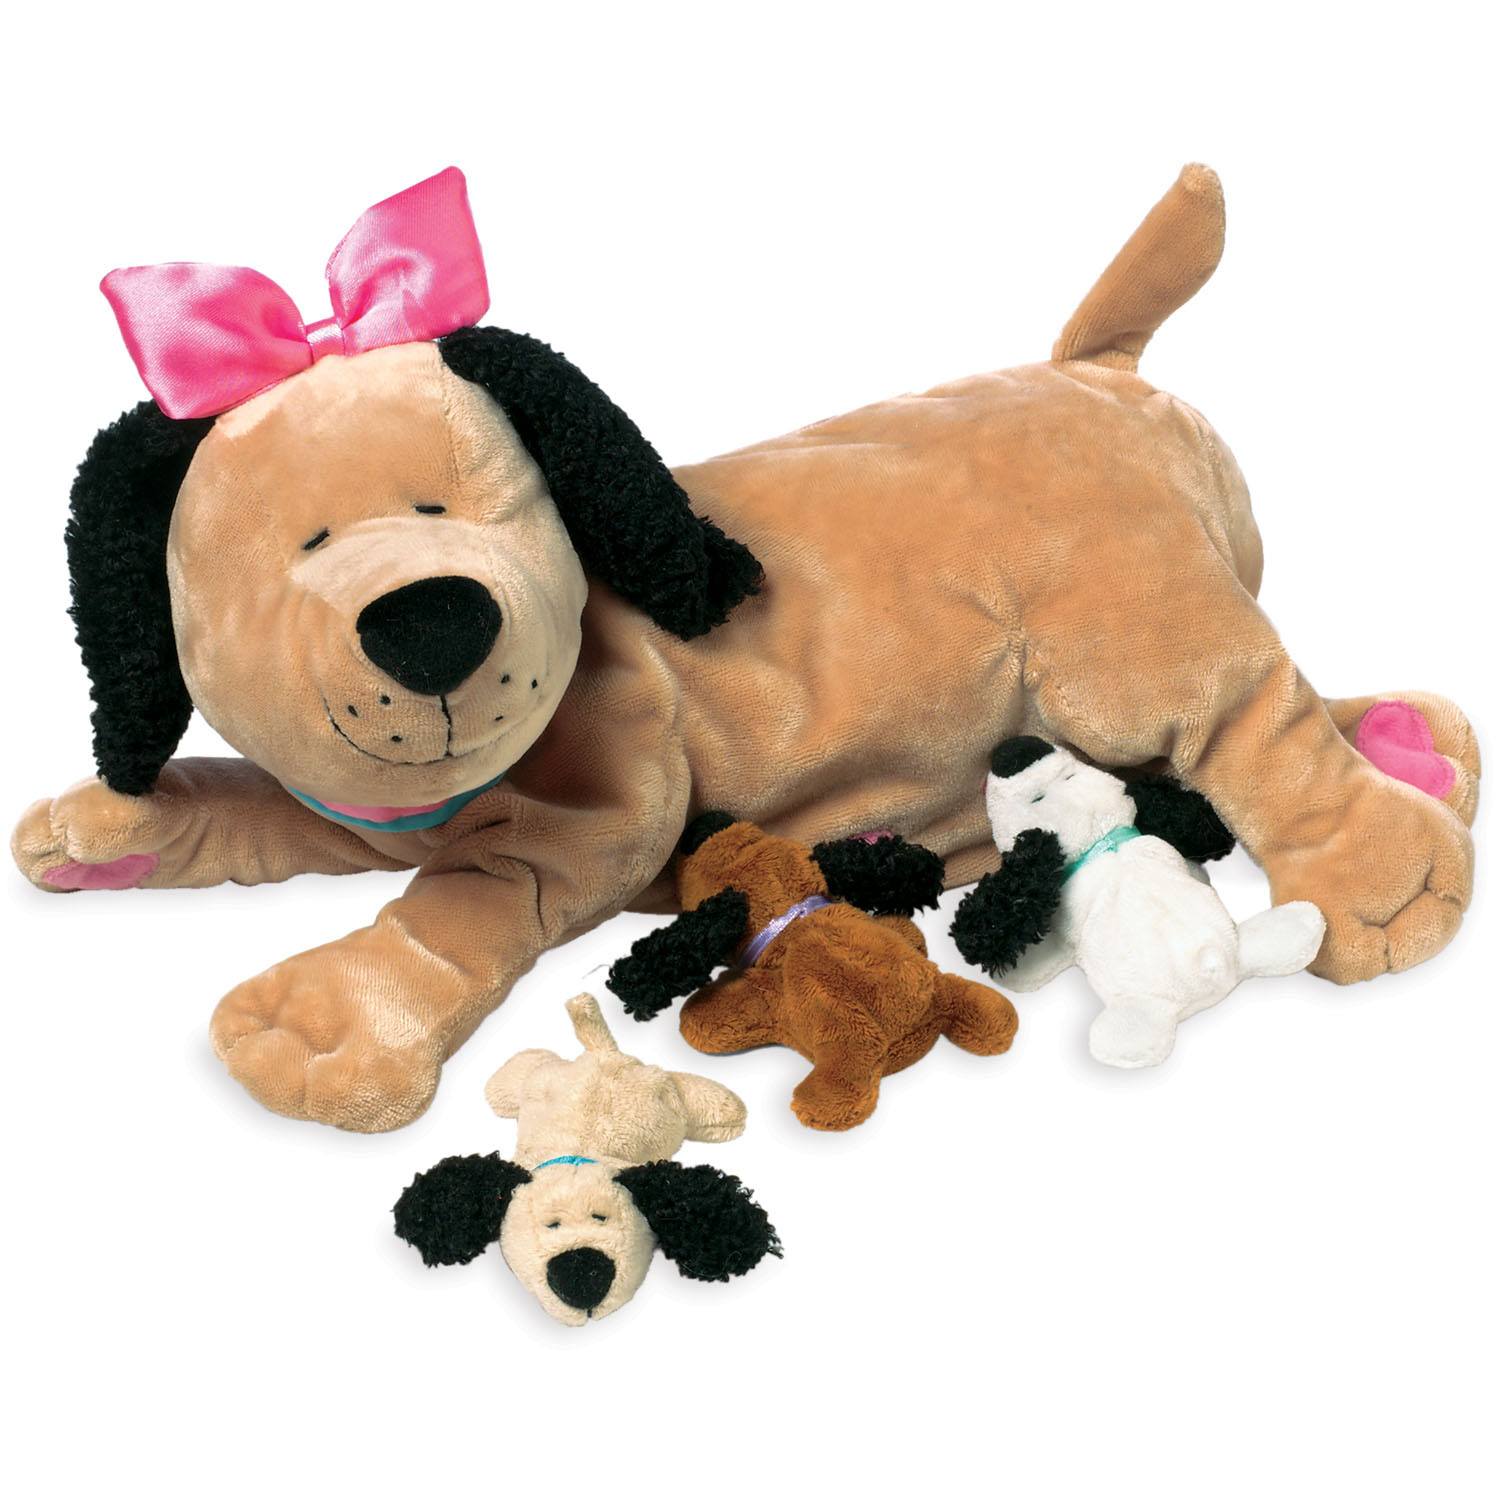 https://www.momjunction.com/wp-content/uploads/product-images/manhattan-toy-nursing-nana-dog-toy_afl926.jpg